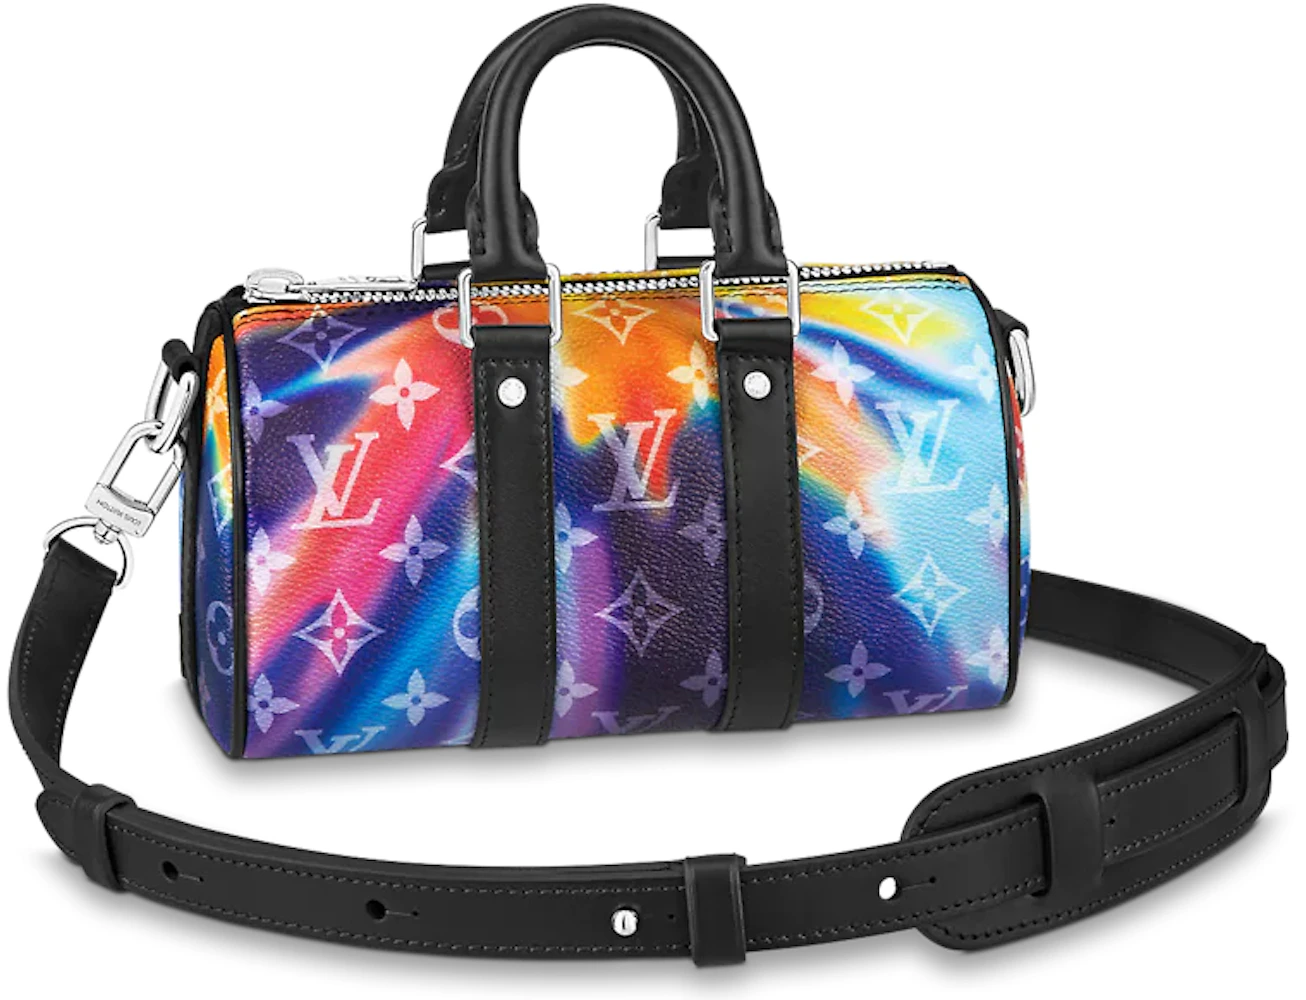 Louis Vuitton Multicolor Light iPhone XS Clear Case